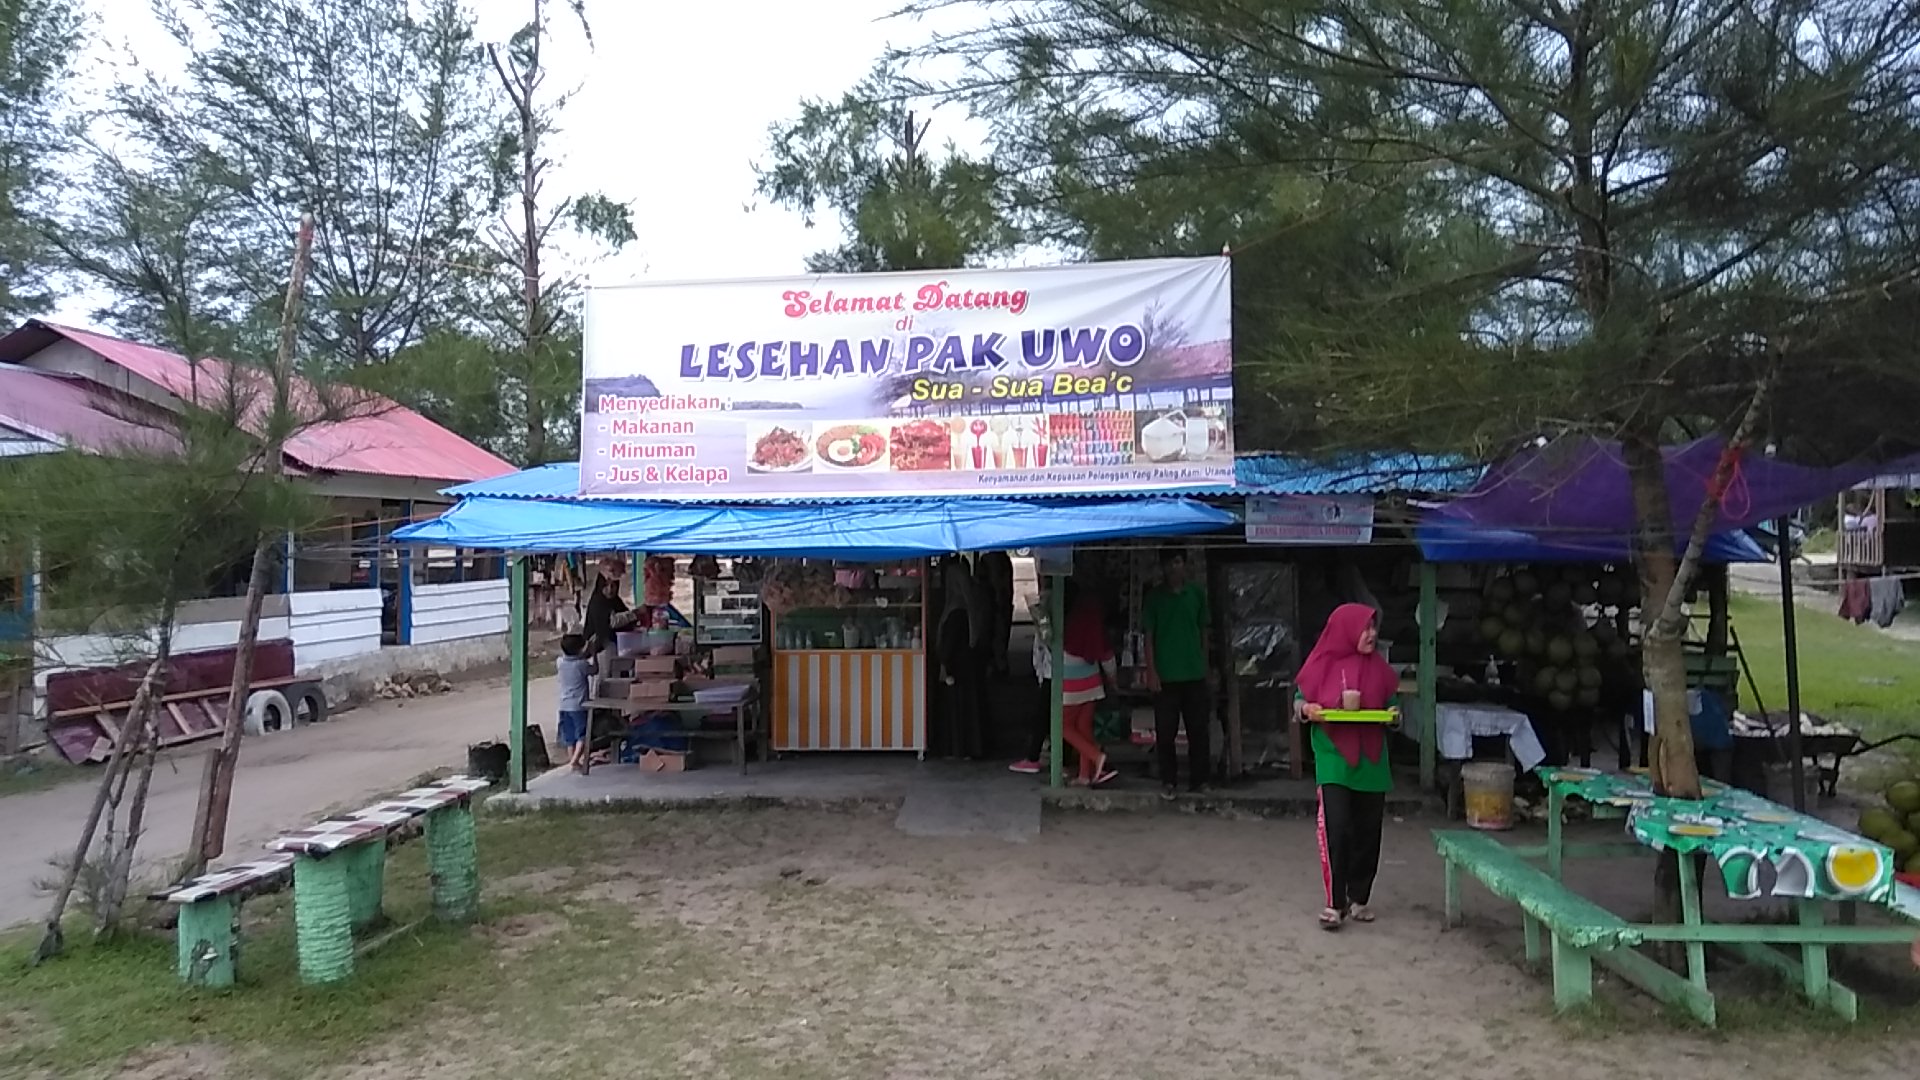 Lesehan Pak Uwo: Harga Tiket, Foto, Lokasi, Fasilitas dan Spot